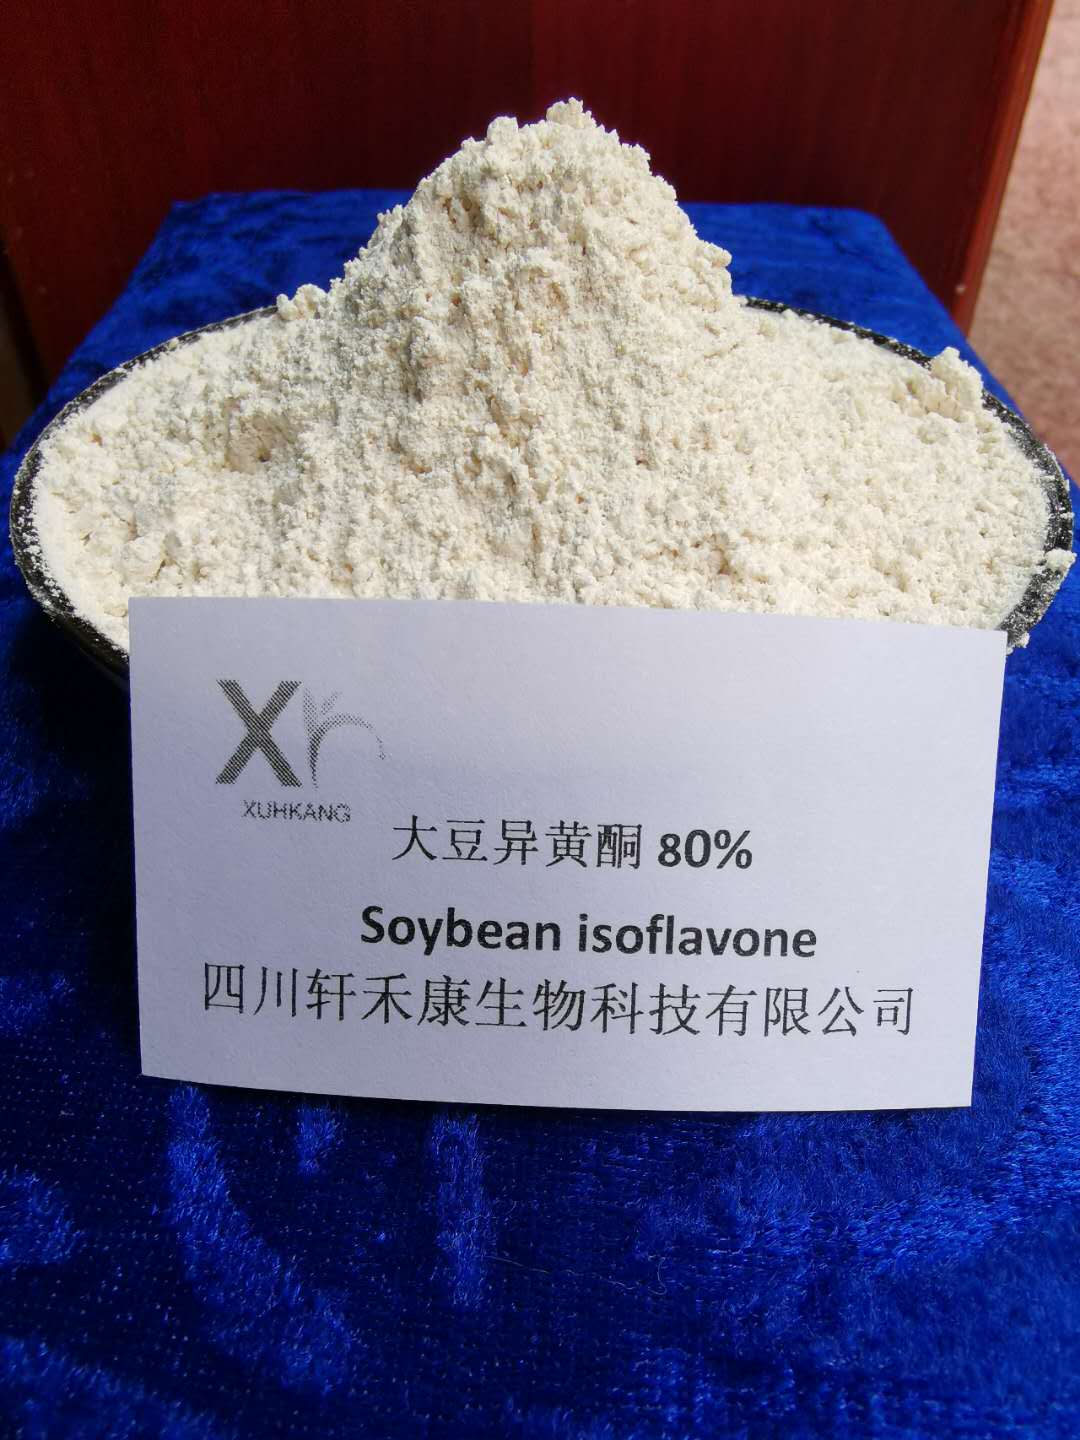 大豆异黄酮,Soybean isoflavones